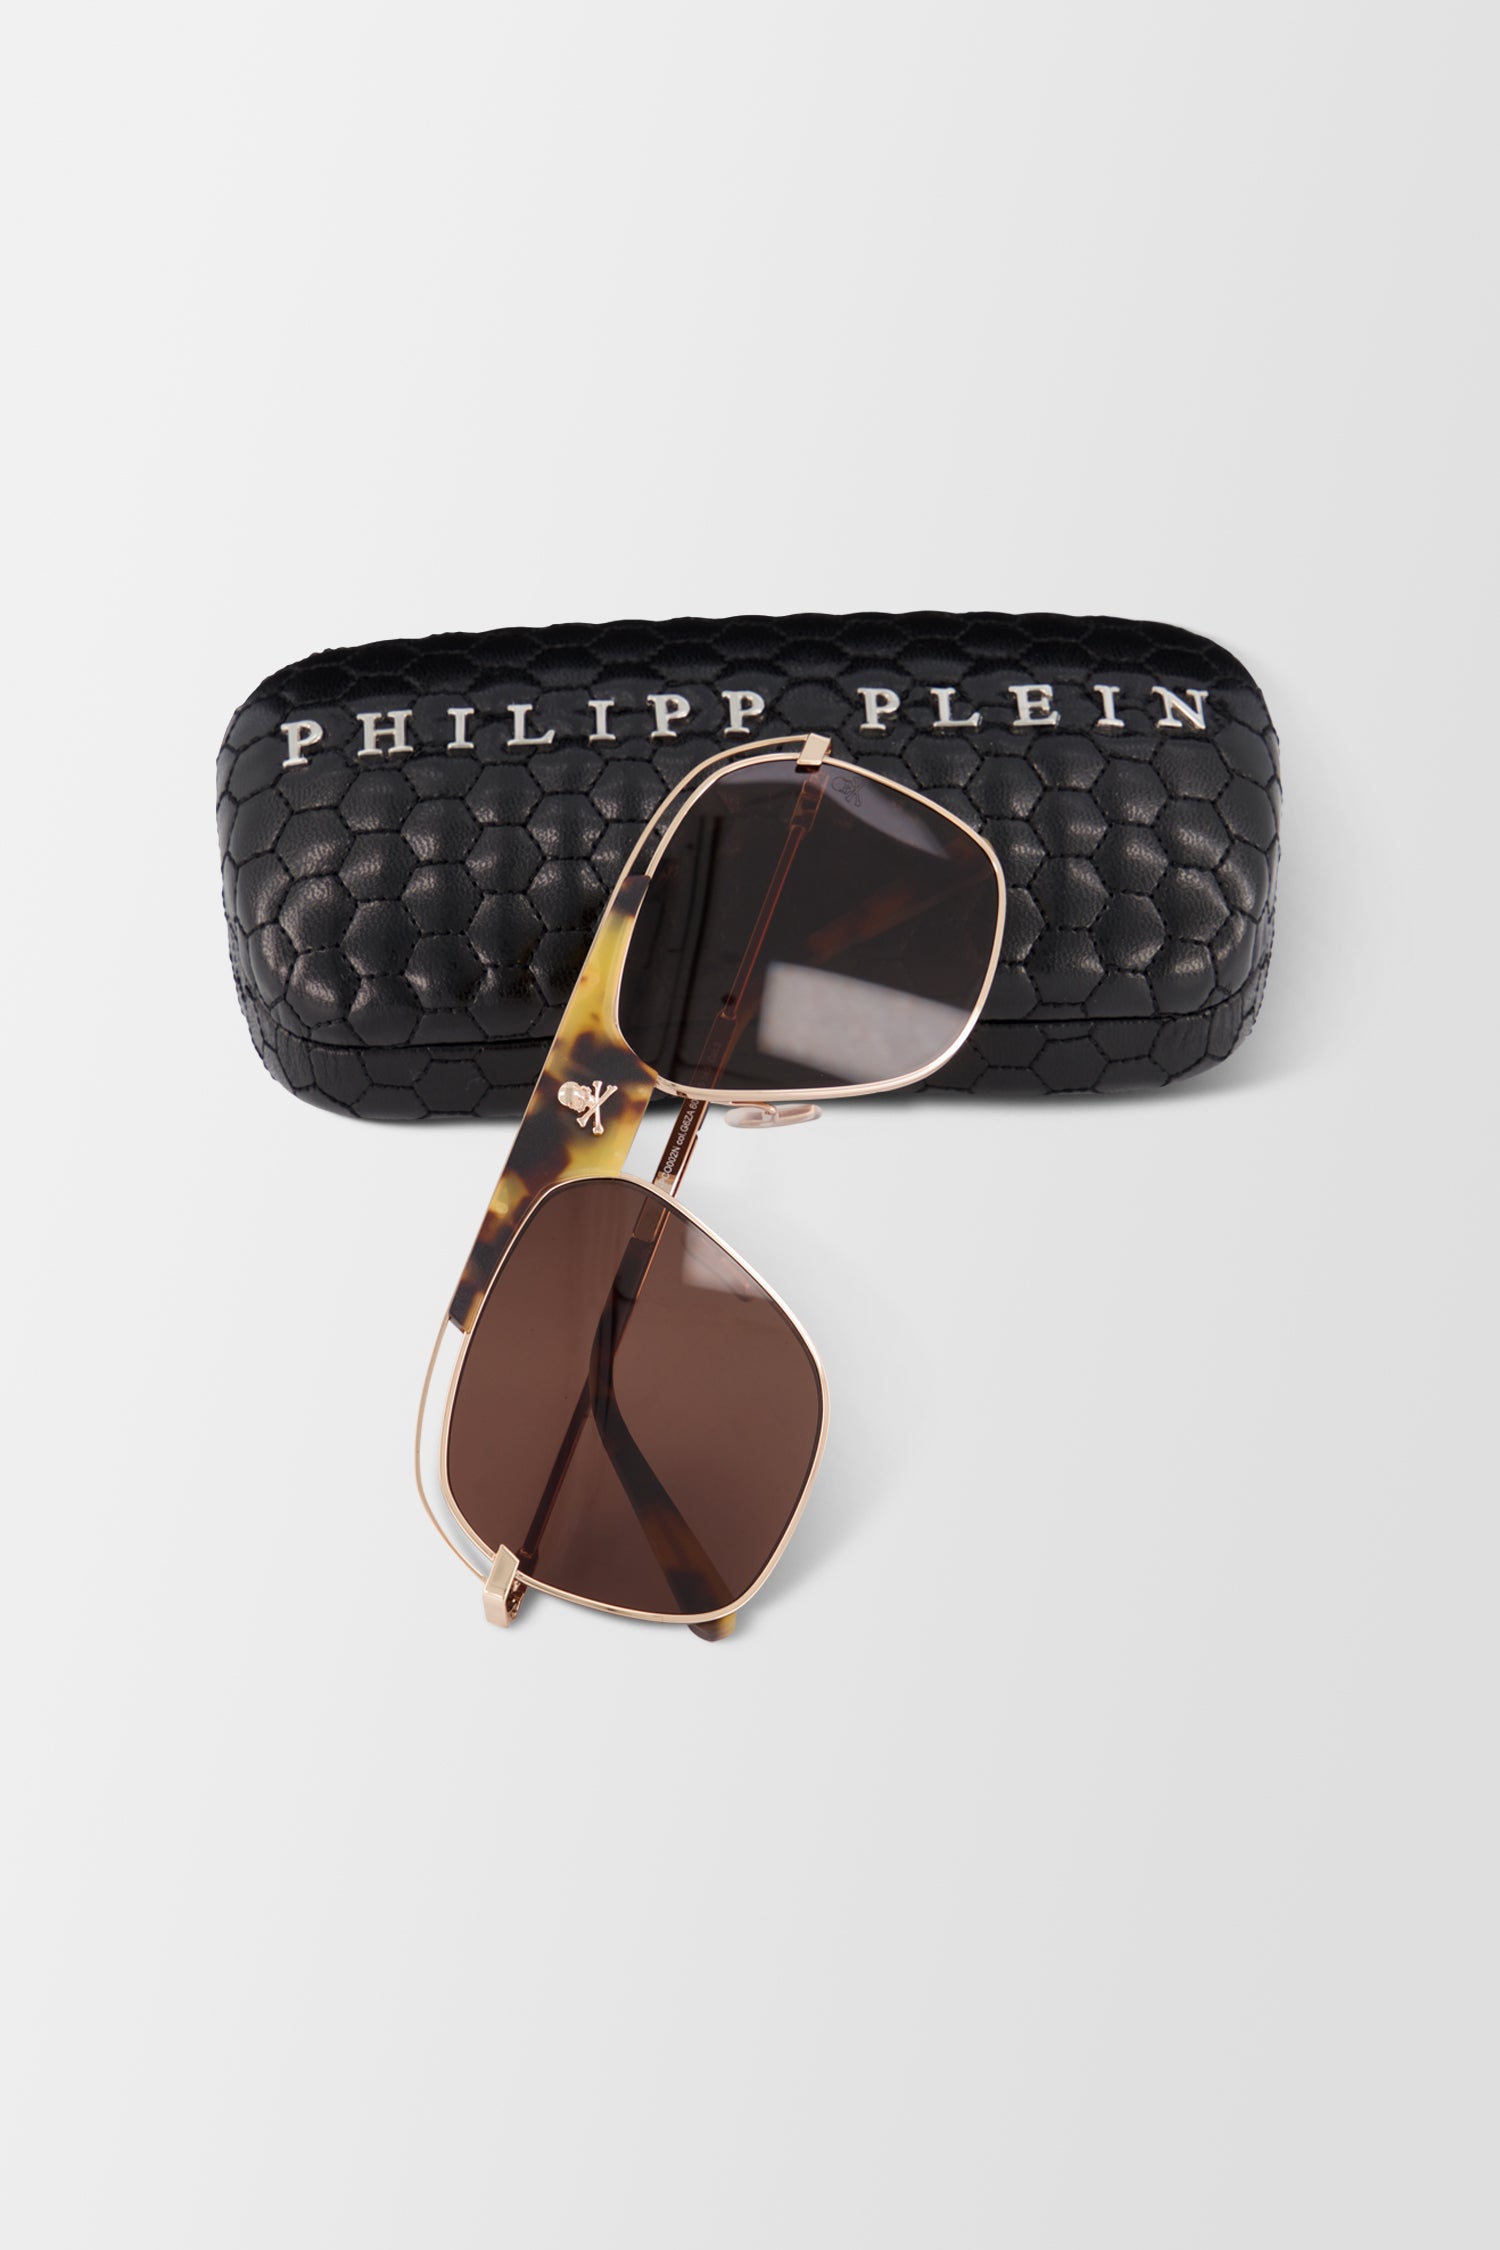 Philipp Plein Original Noah Sunglasses